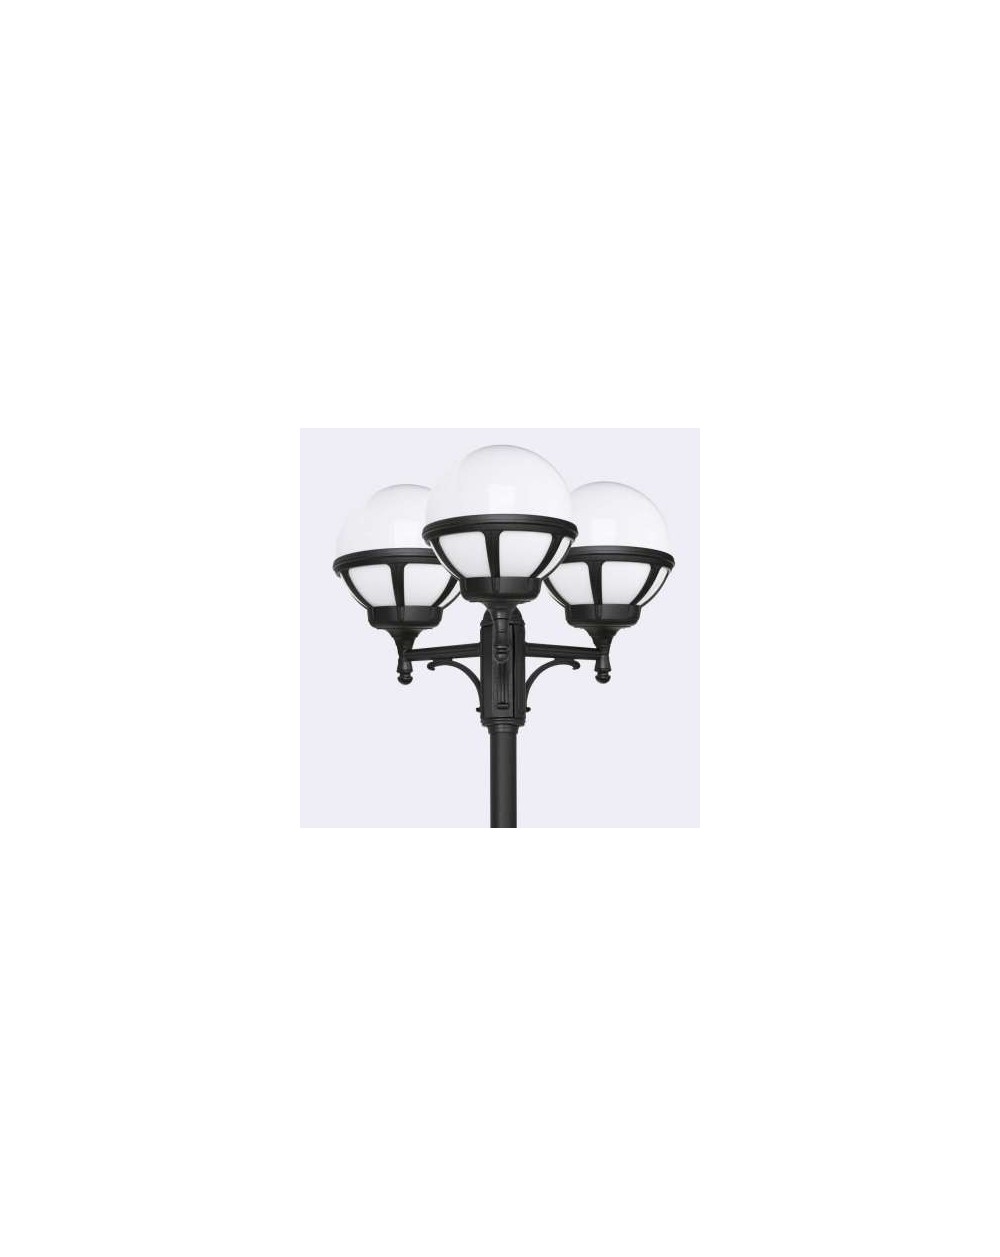 Latarnia potrójna Bolonia klosz mleczny - Norlys zewnętrzna lampa ogrodowa oprawa uliczna parkowa czarna lub biała